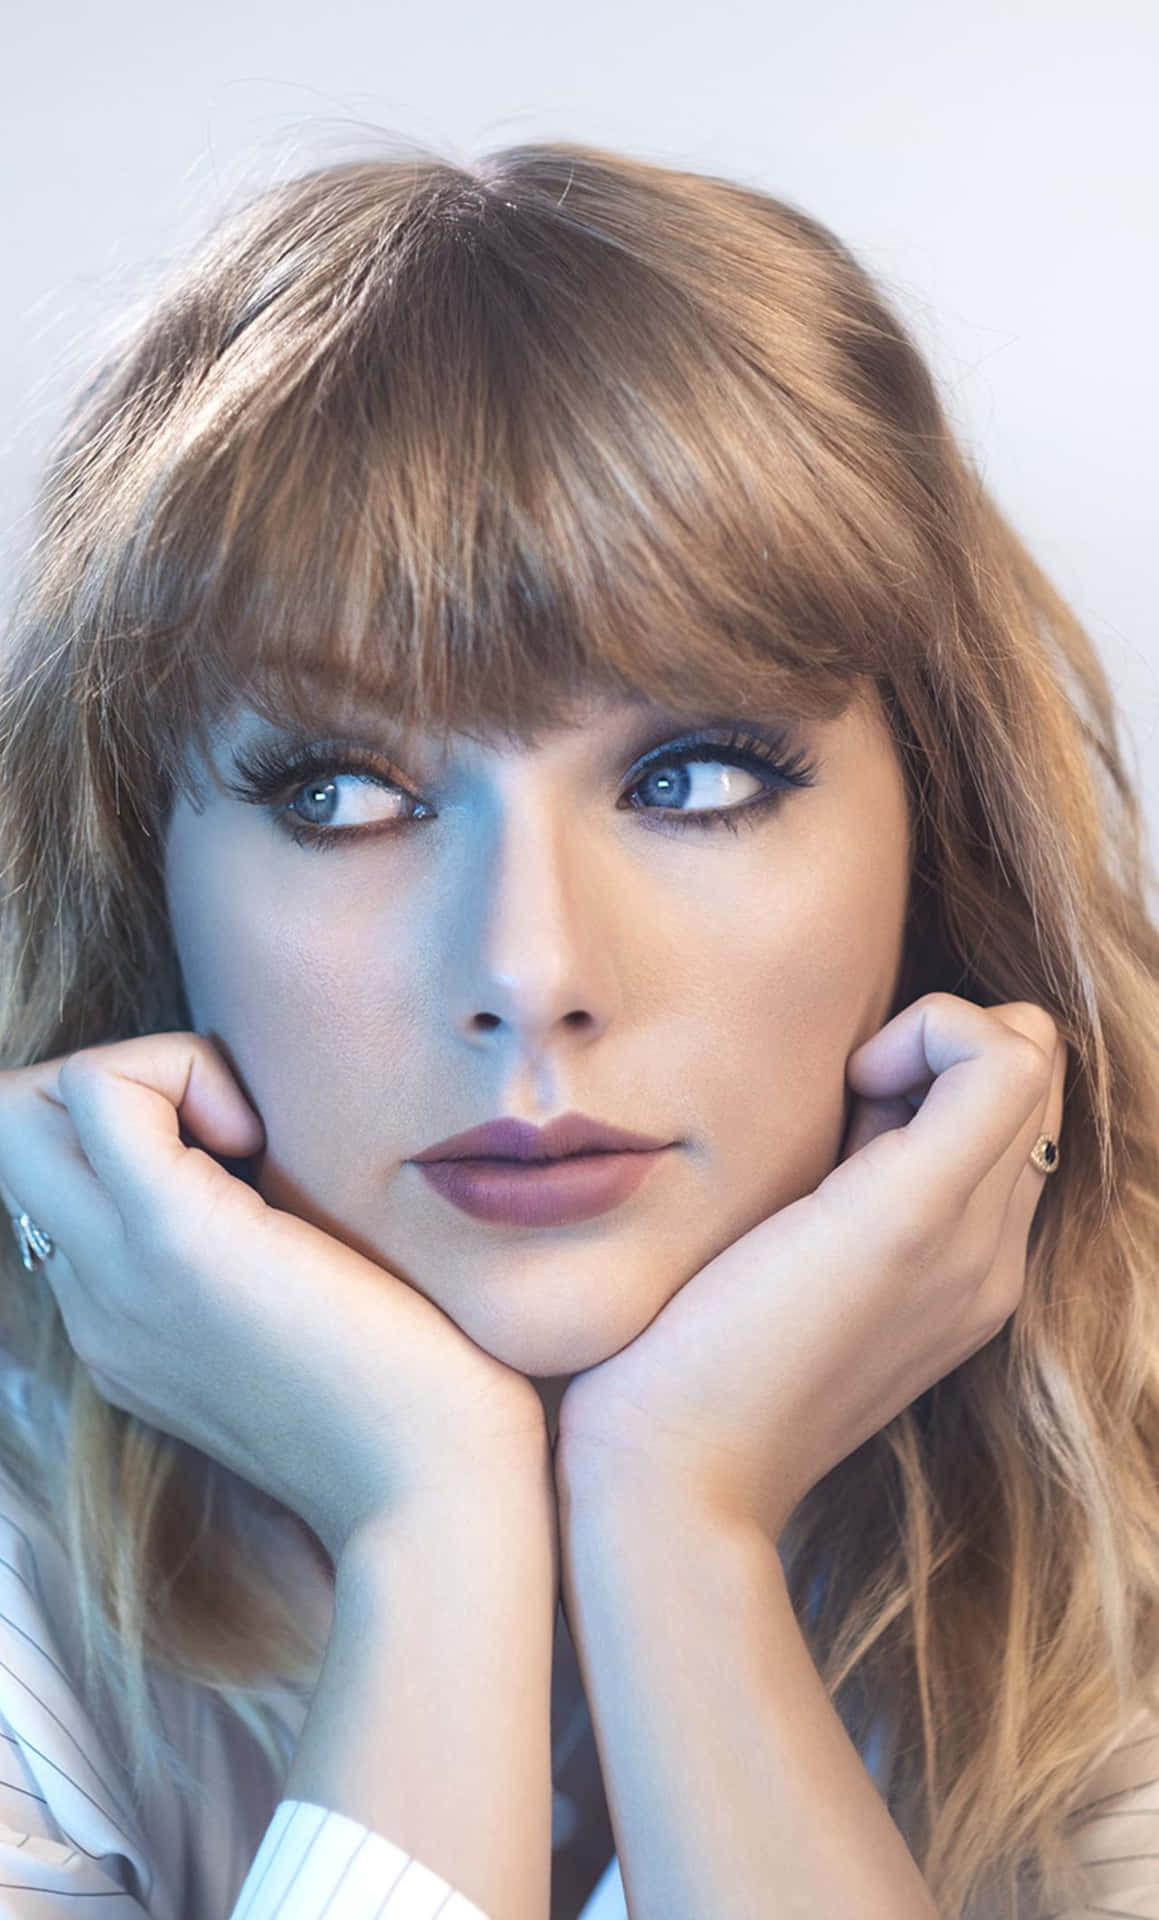 Consigueel Último Iphone De Taylor Swift Para Estar Conectado Y Mostrar Tu Amor De Fan. Fondo de pantalla